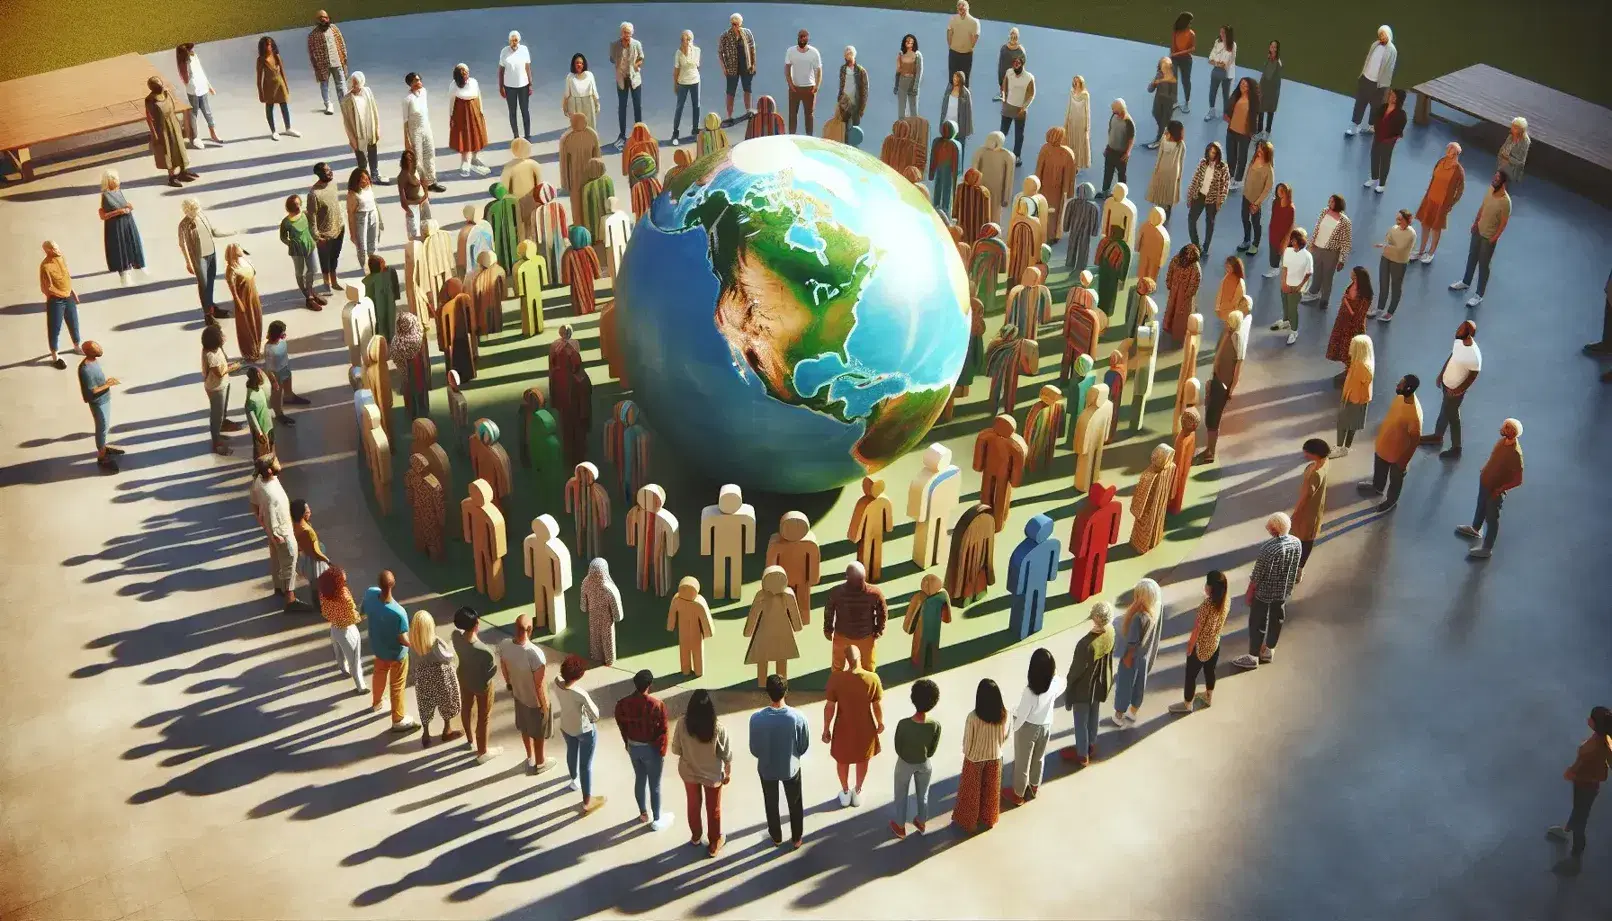 Grupo diverso de personas en círculo al aire libre con un globo terráqueo y figuras de madera en el centro, reflejando interacción y diálogo en un entorno natural.